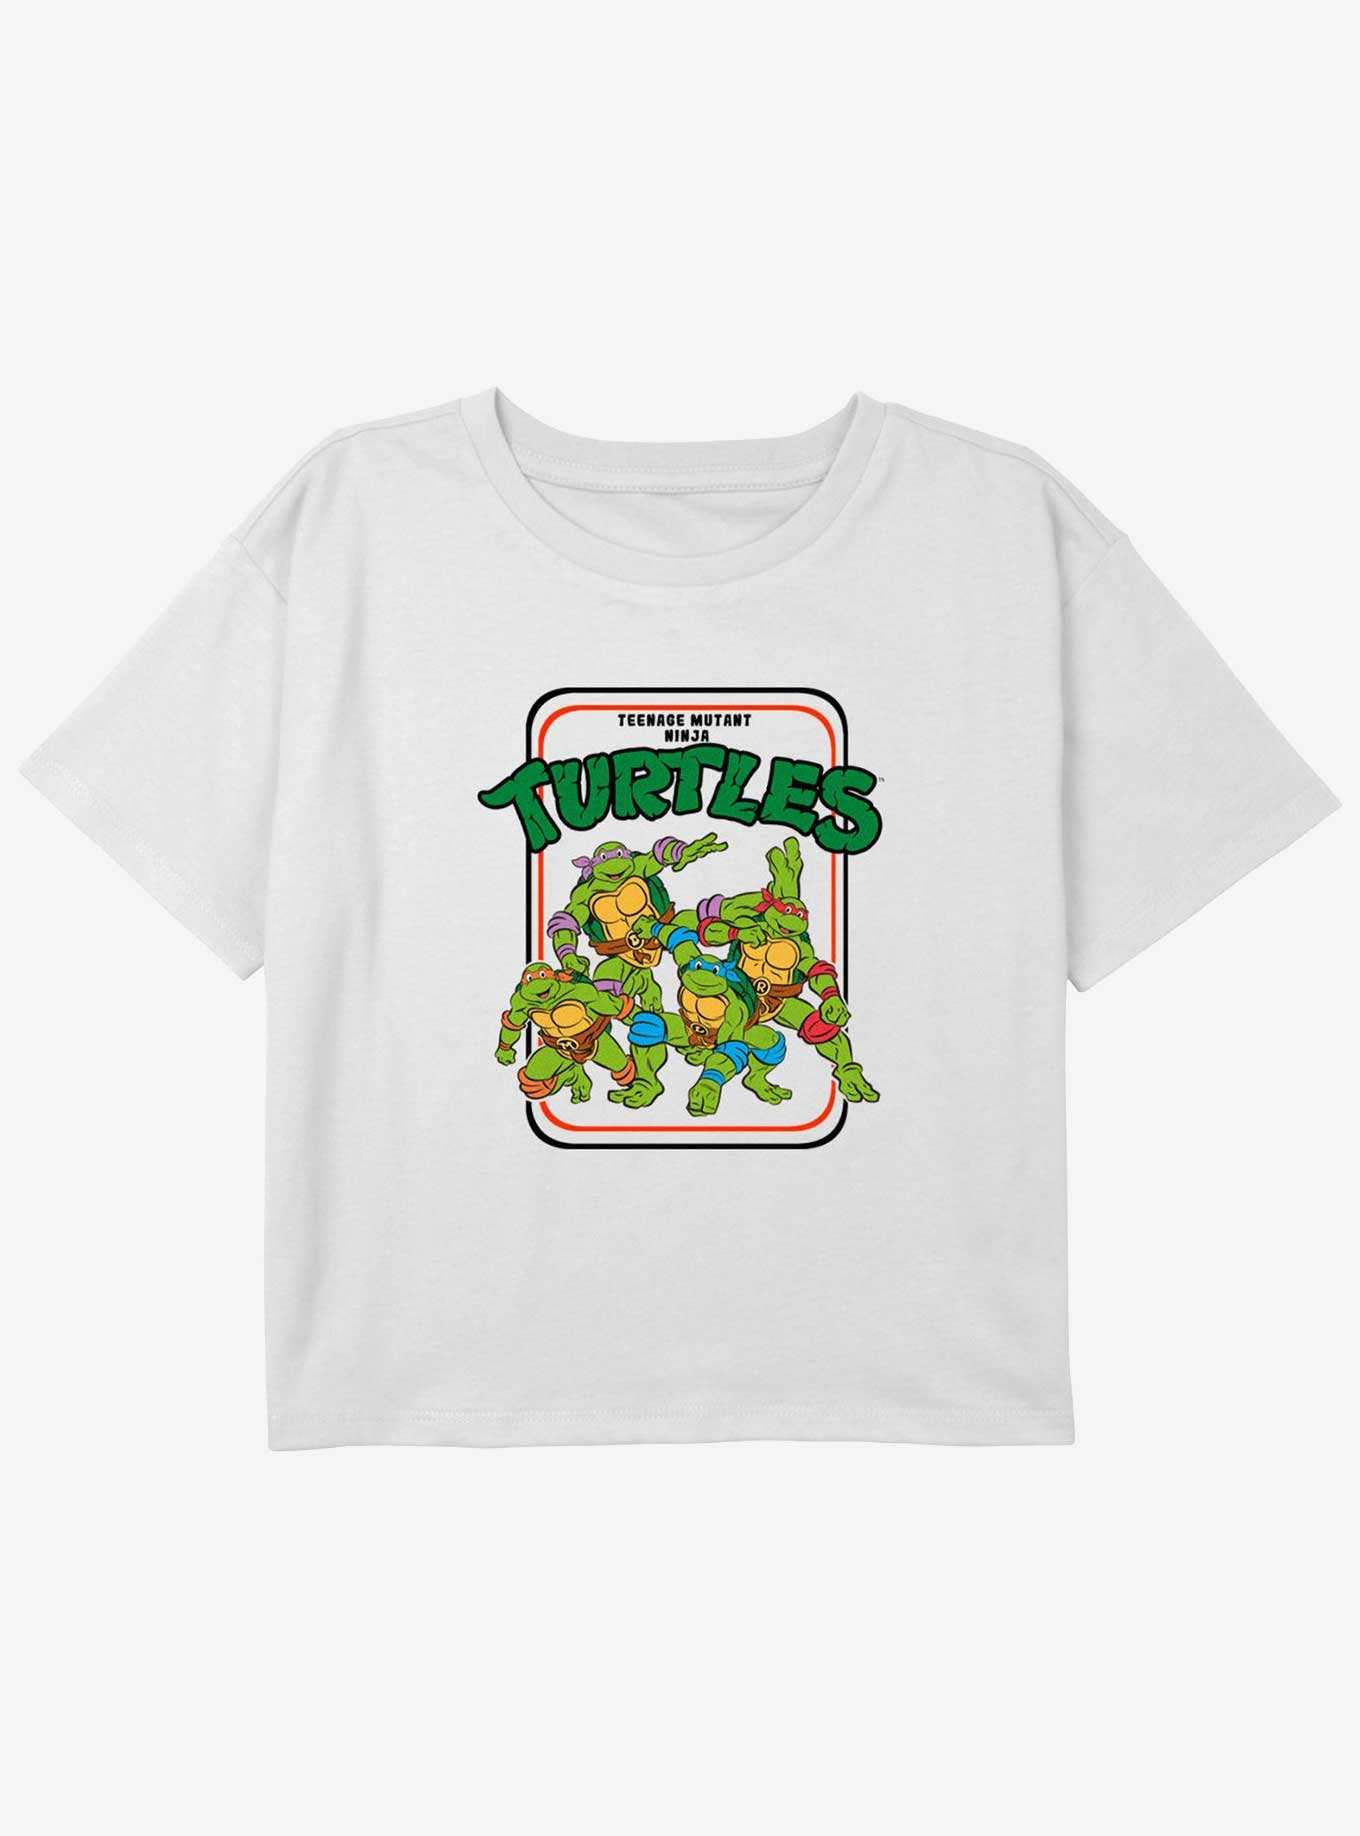 Teenage Mutant Ninja Turtles Vintage Turtles Girls Youth Crop T-Shirt, , hi-res